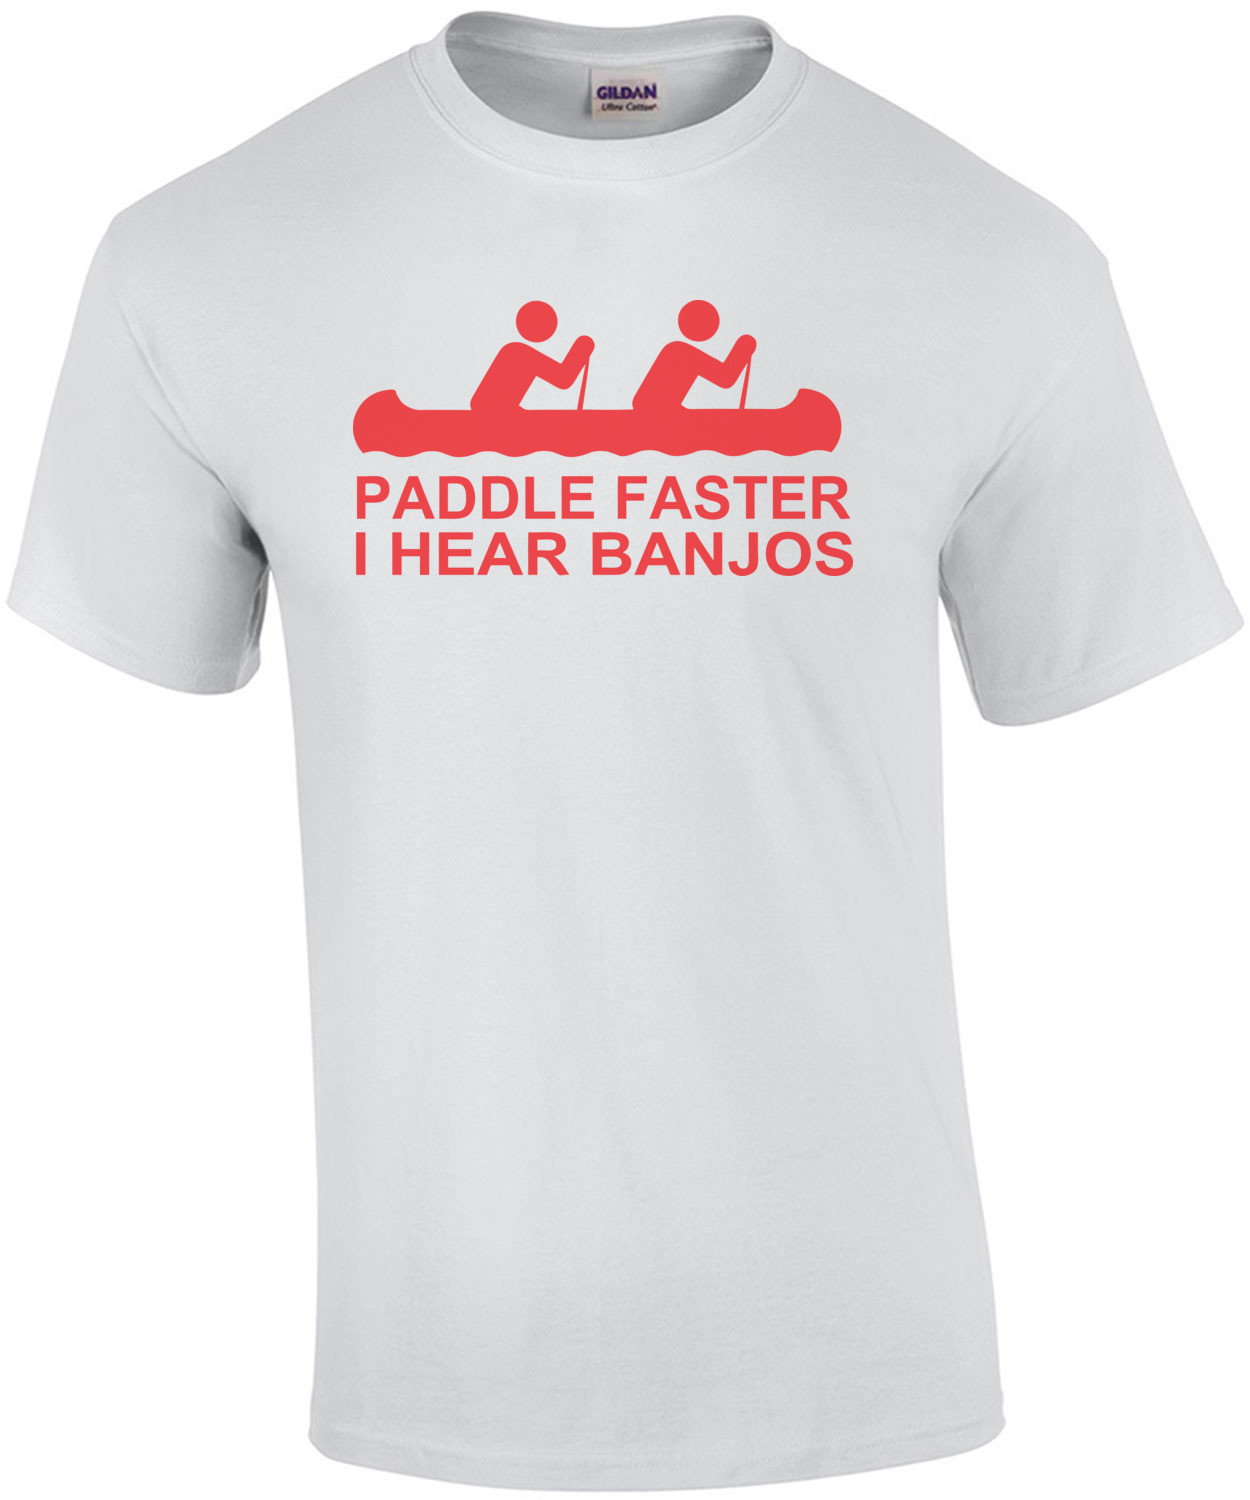 Paddle Faster I Hear Banjos Shirt